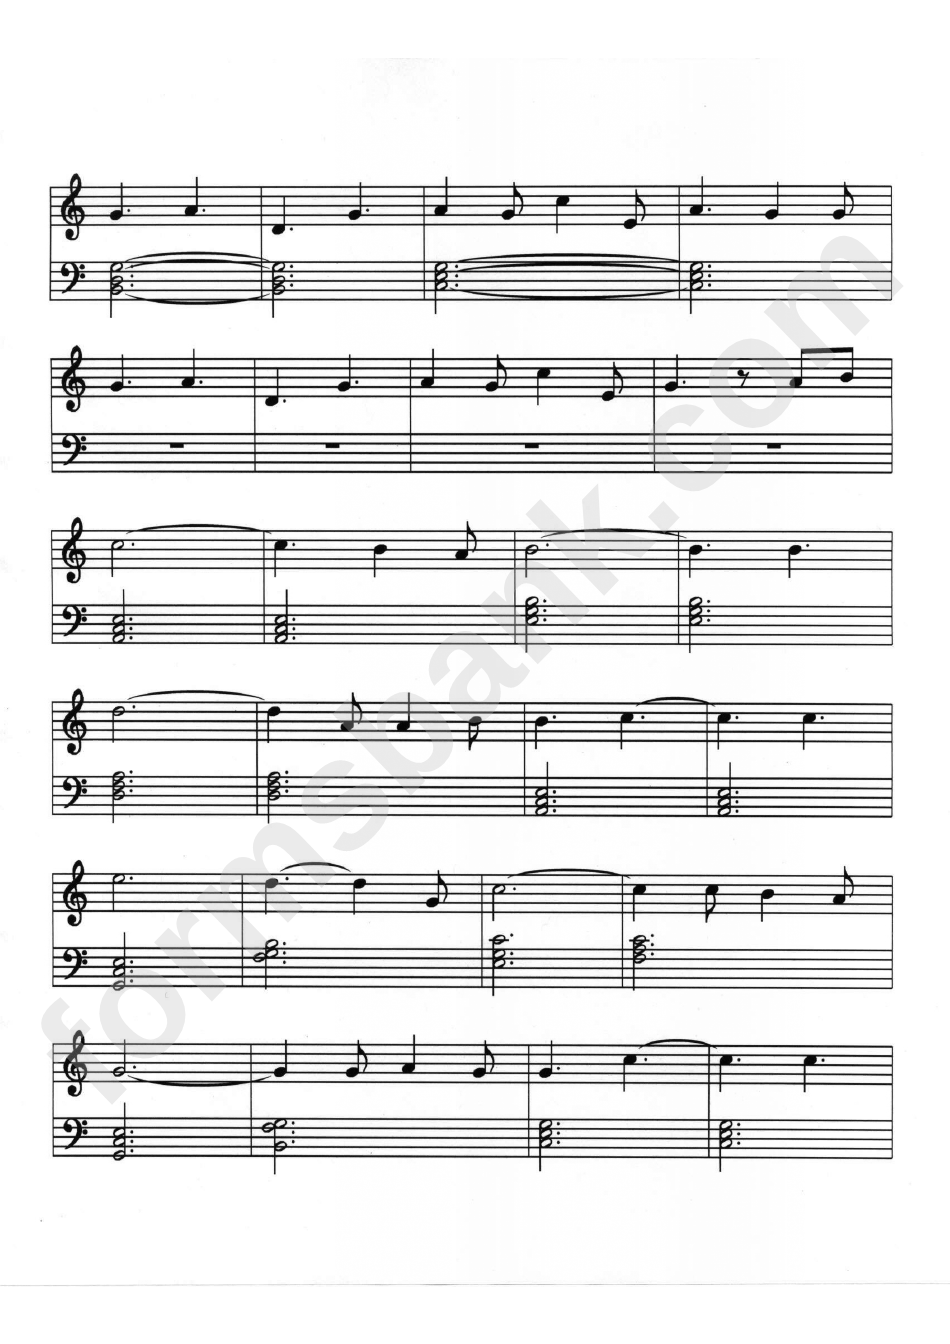 O Holy Night / Cantique De Noel Piano Sheet Music